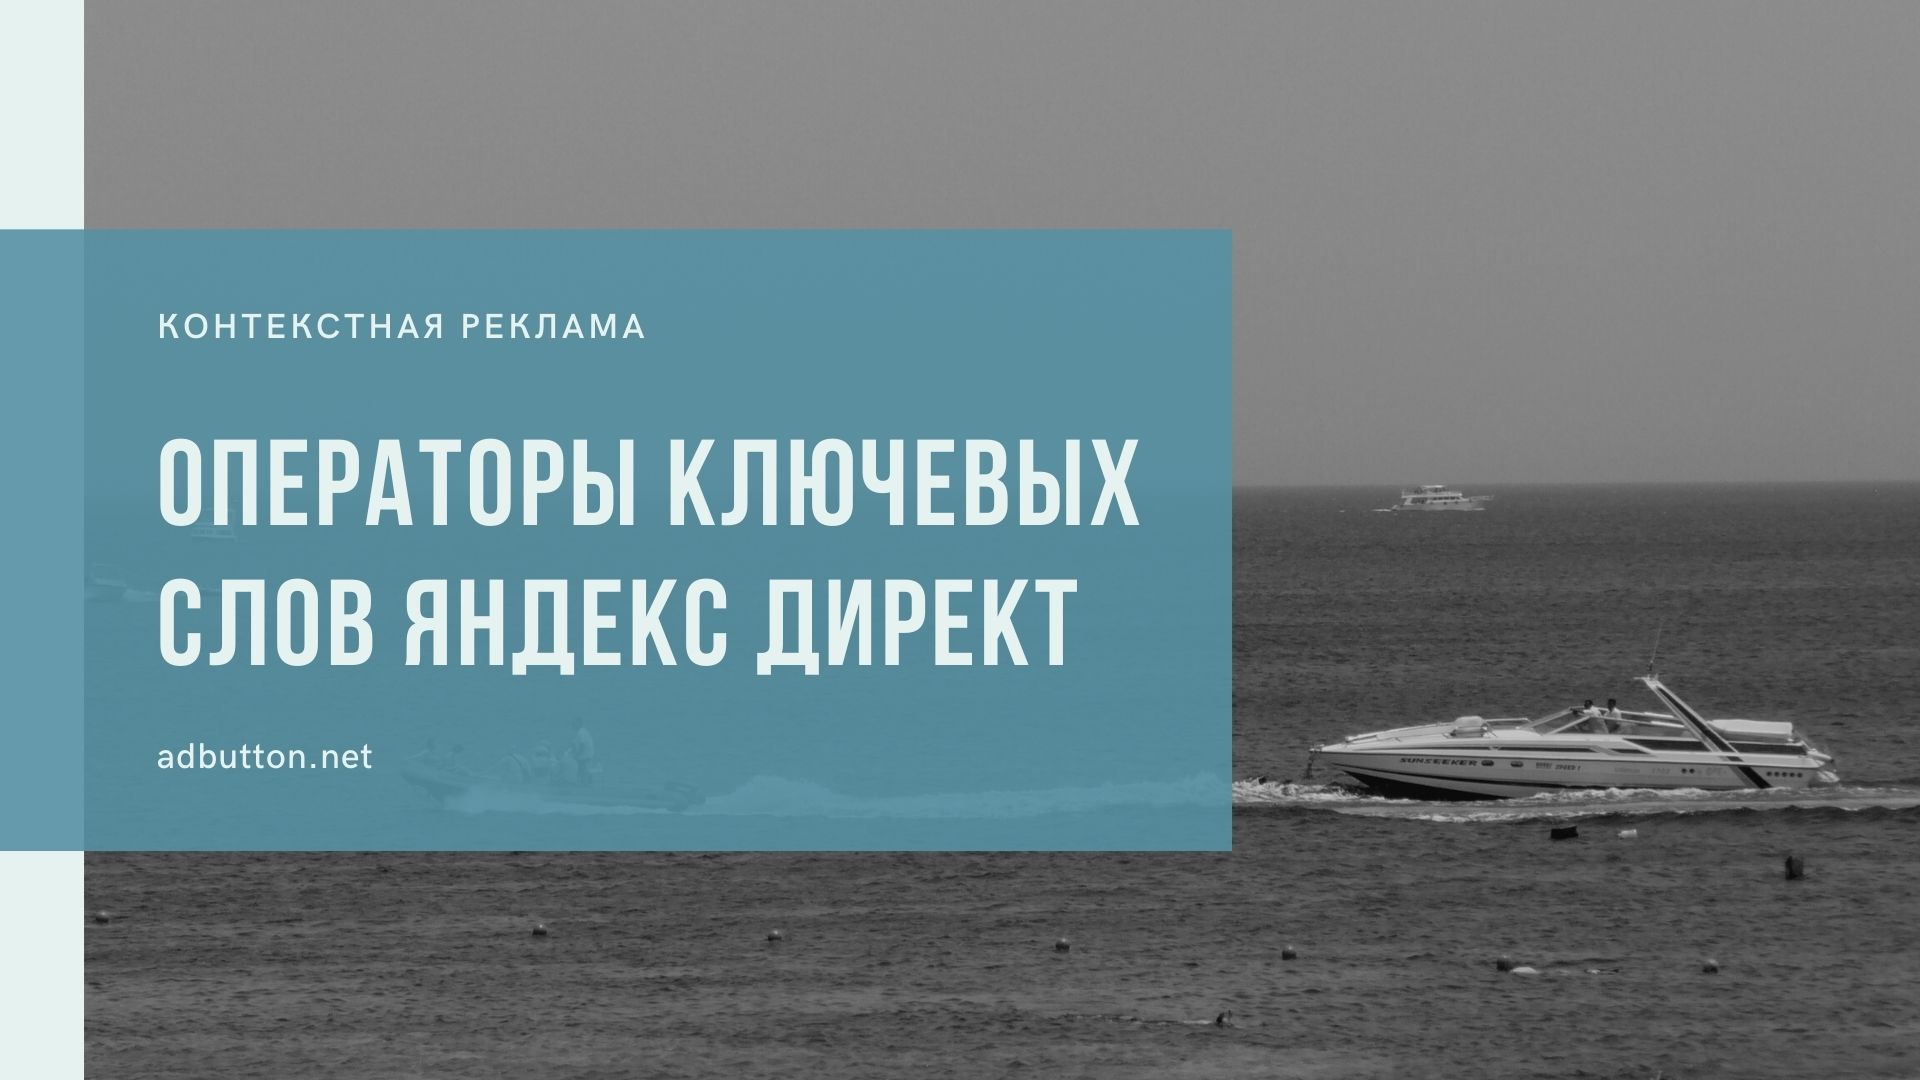 Операторы ключевых слов Яндекс Директ: минус слова и кавычки